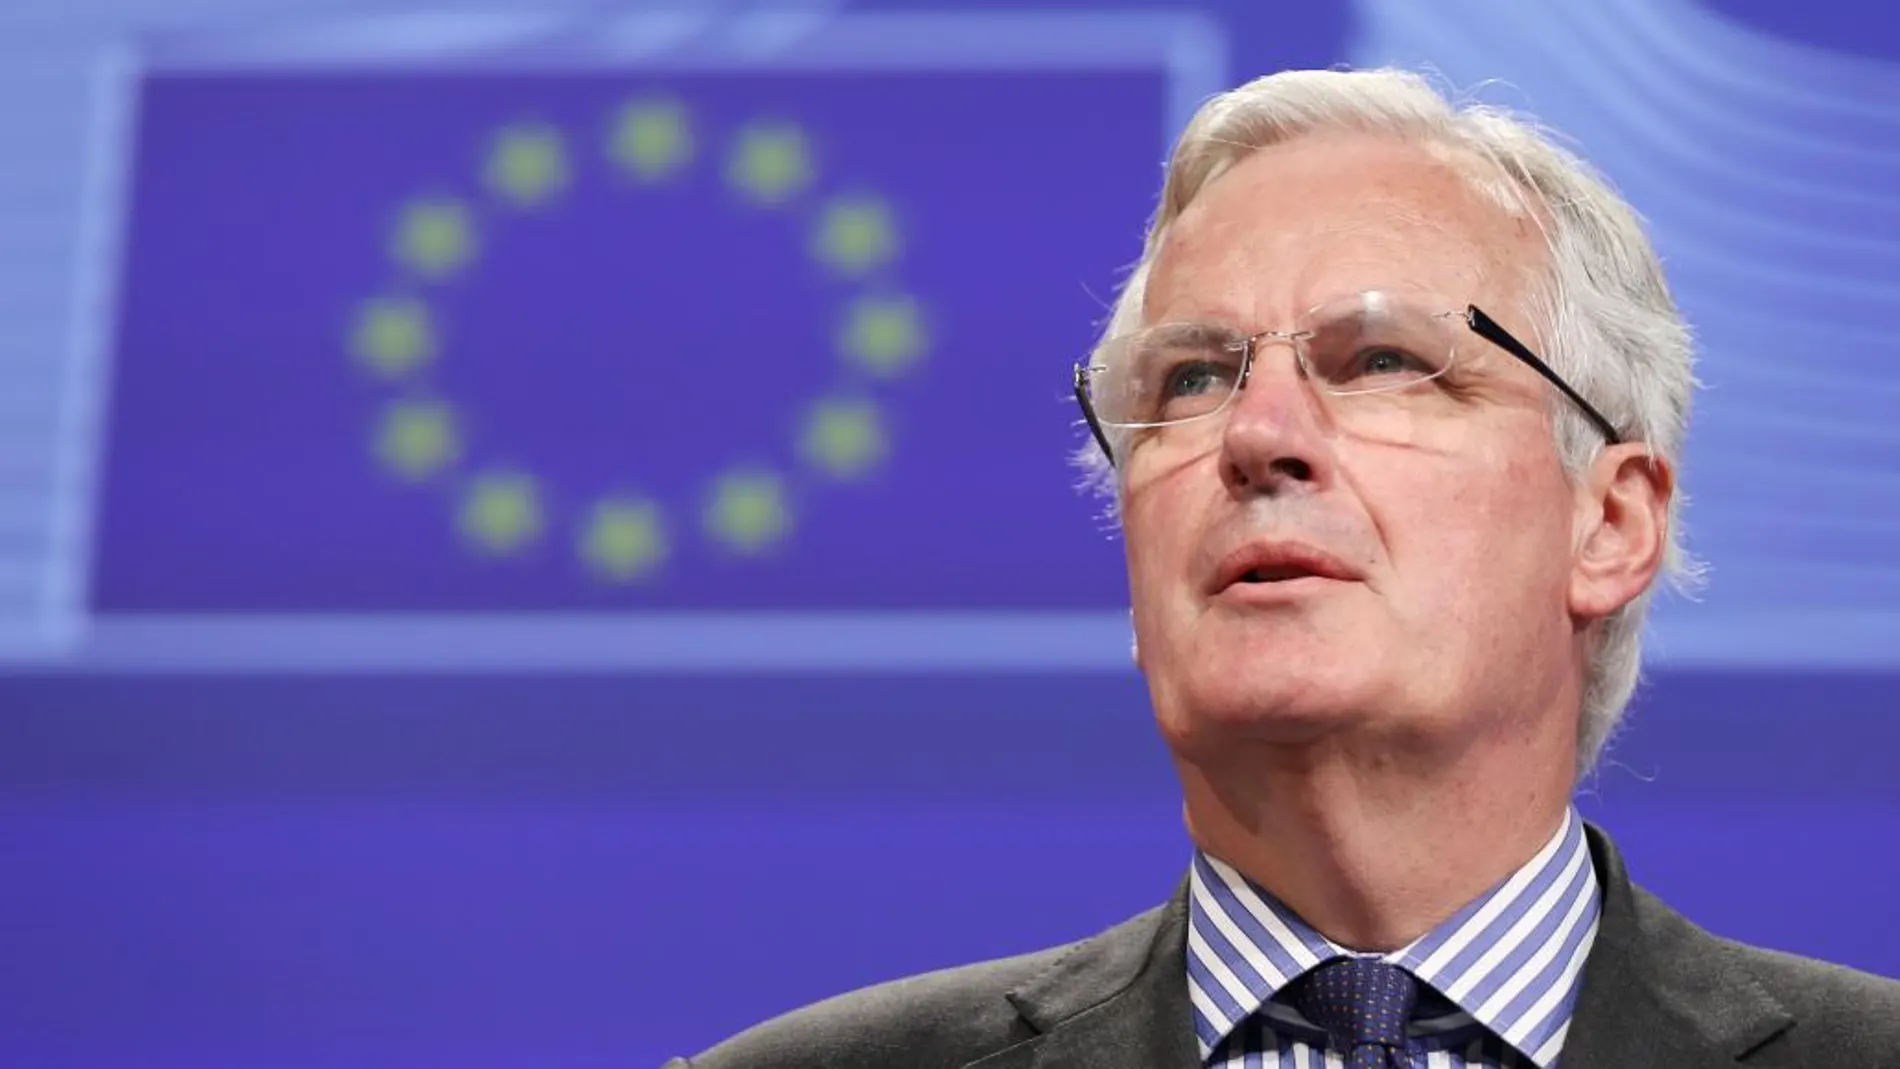 El excomisario y exministro francés Michel Barnier, en una imagen de 2014